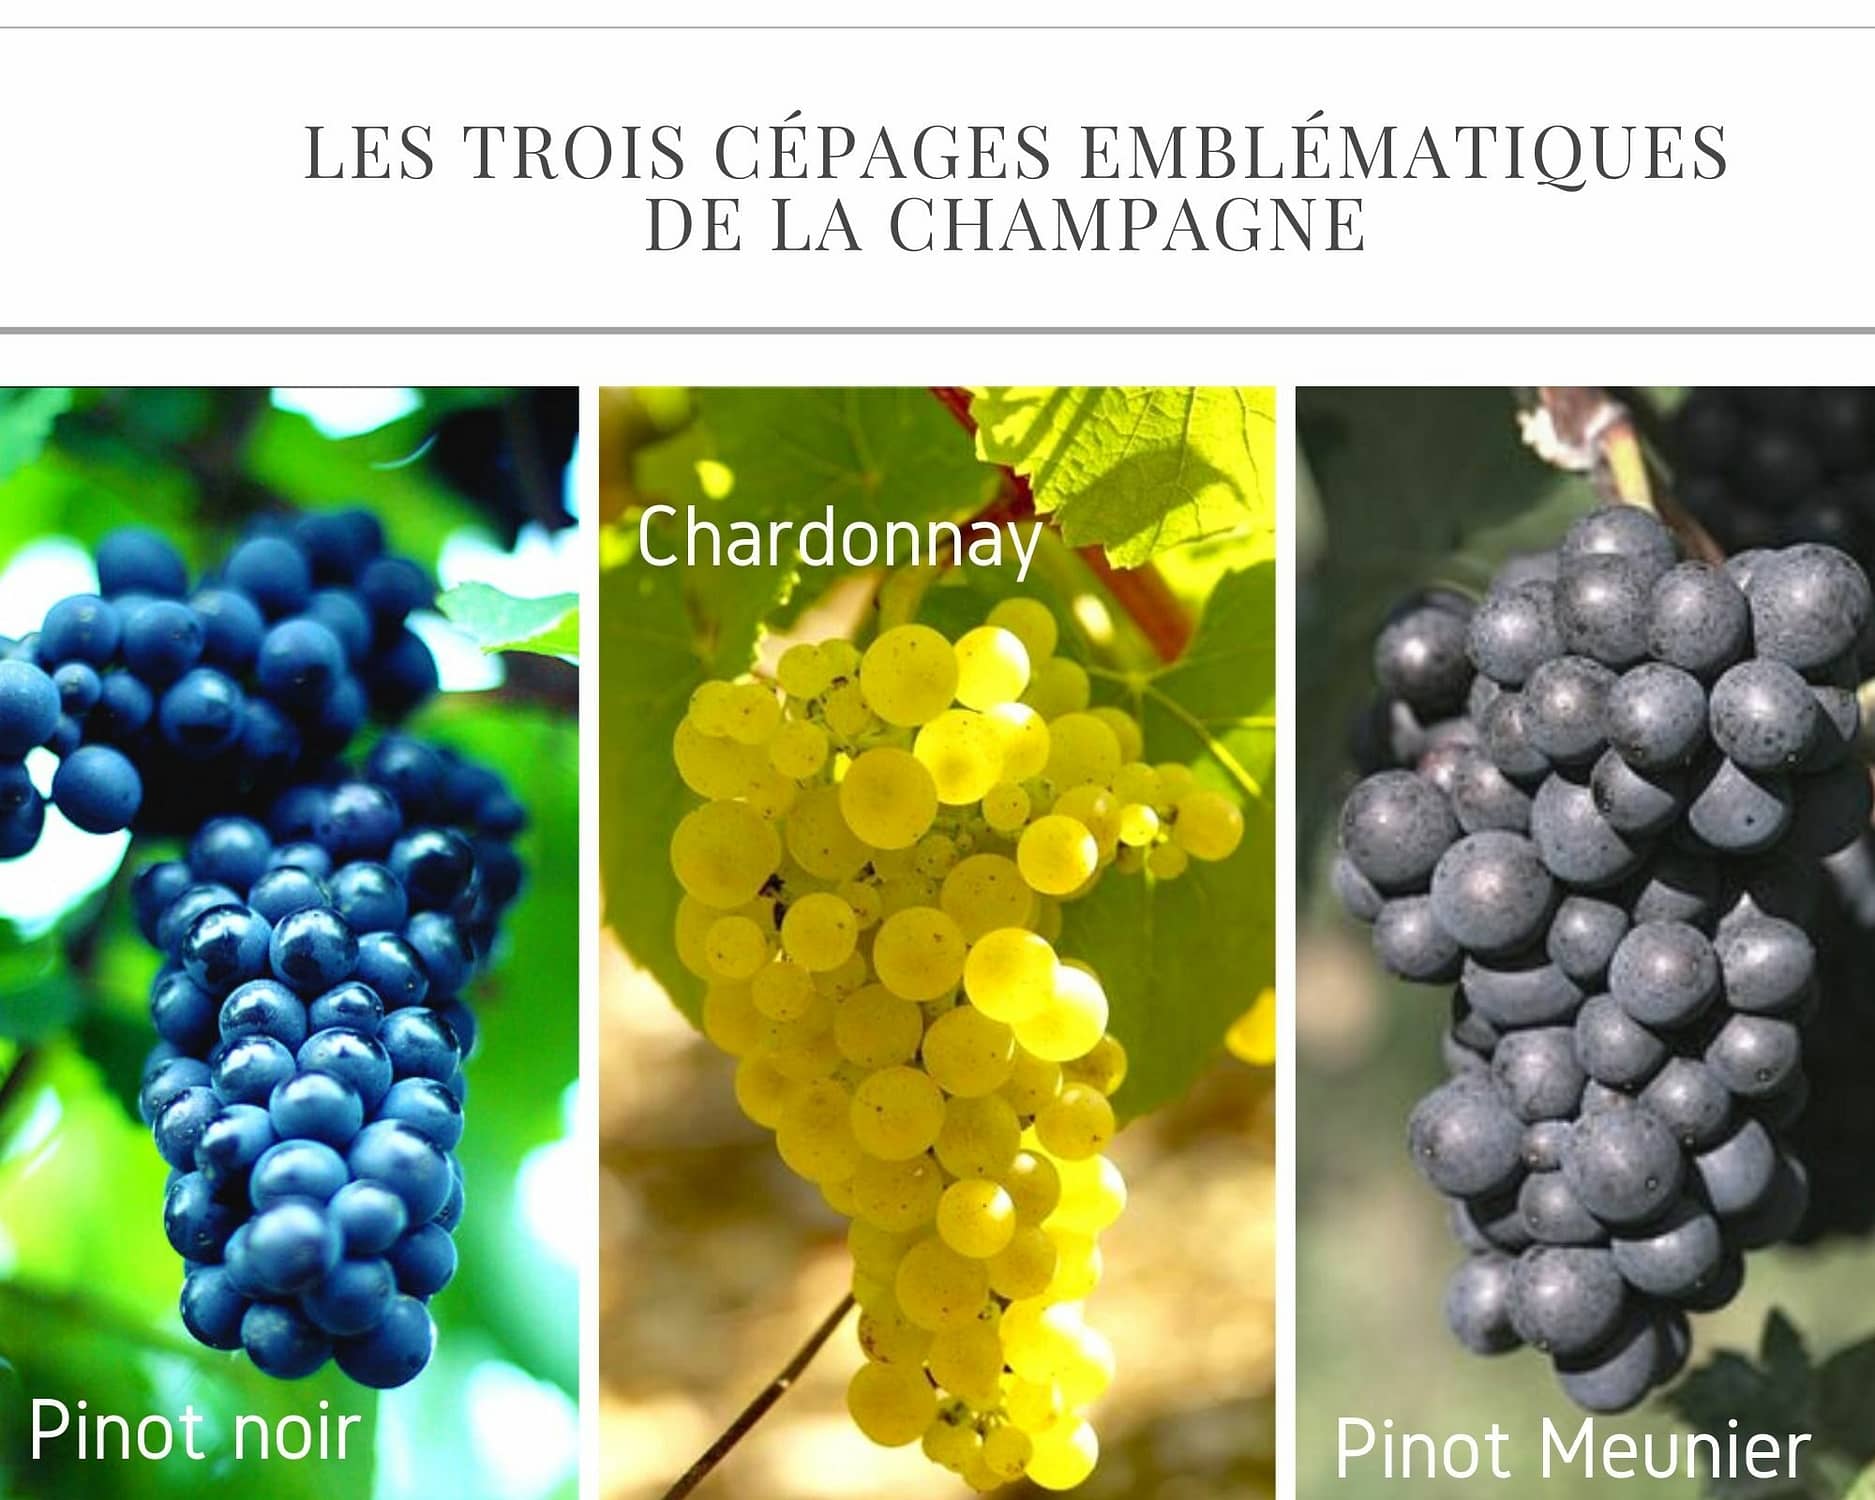 Les trois cépages emblématiques de la Champagne : Pinot noir, Chardonnay, Pinot meunier